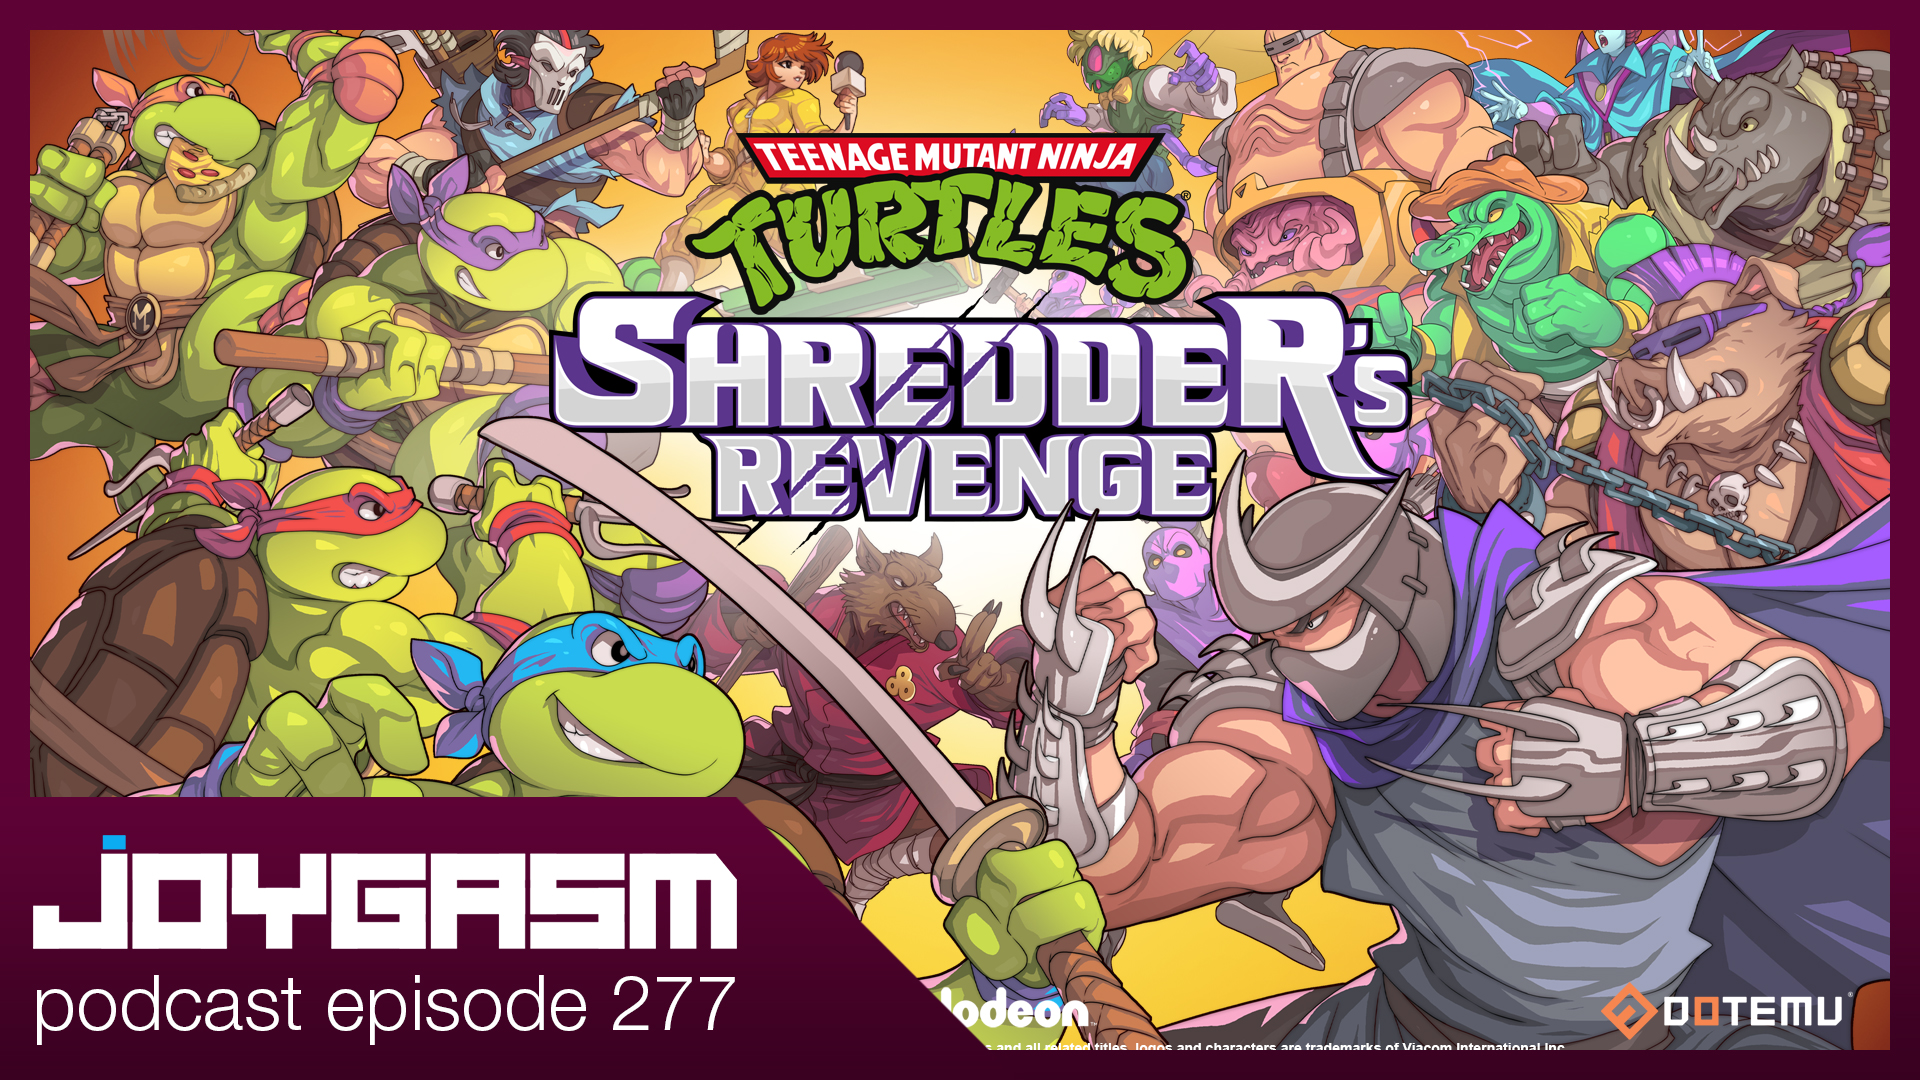 Ep. 277: Teenage Mutant Ninja Turtles Shredder’s Revenge